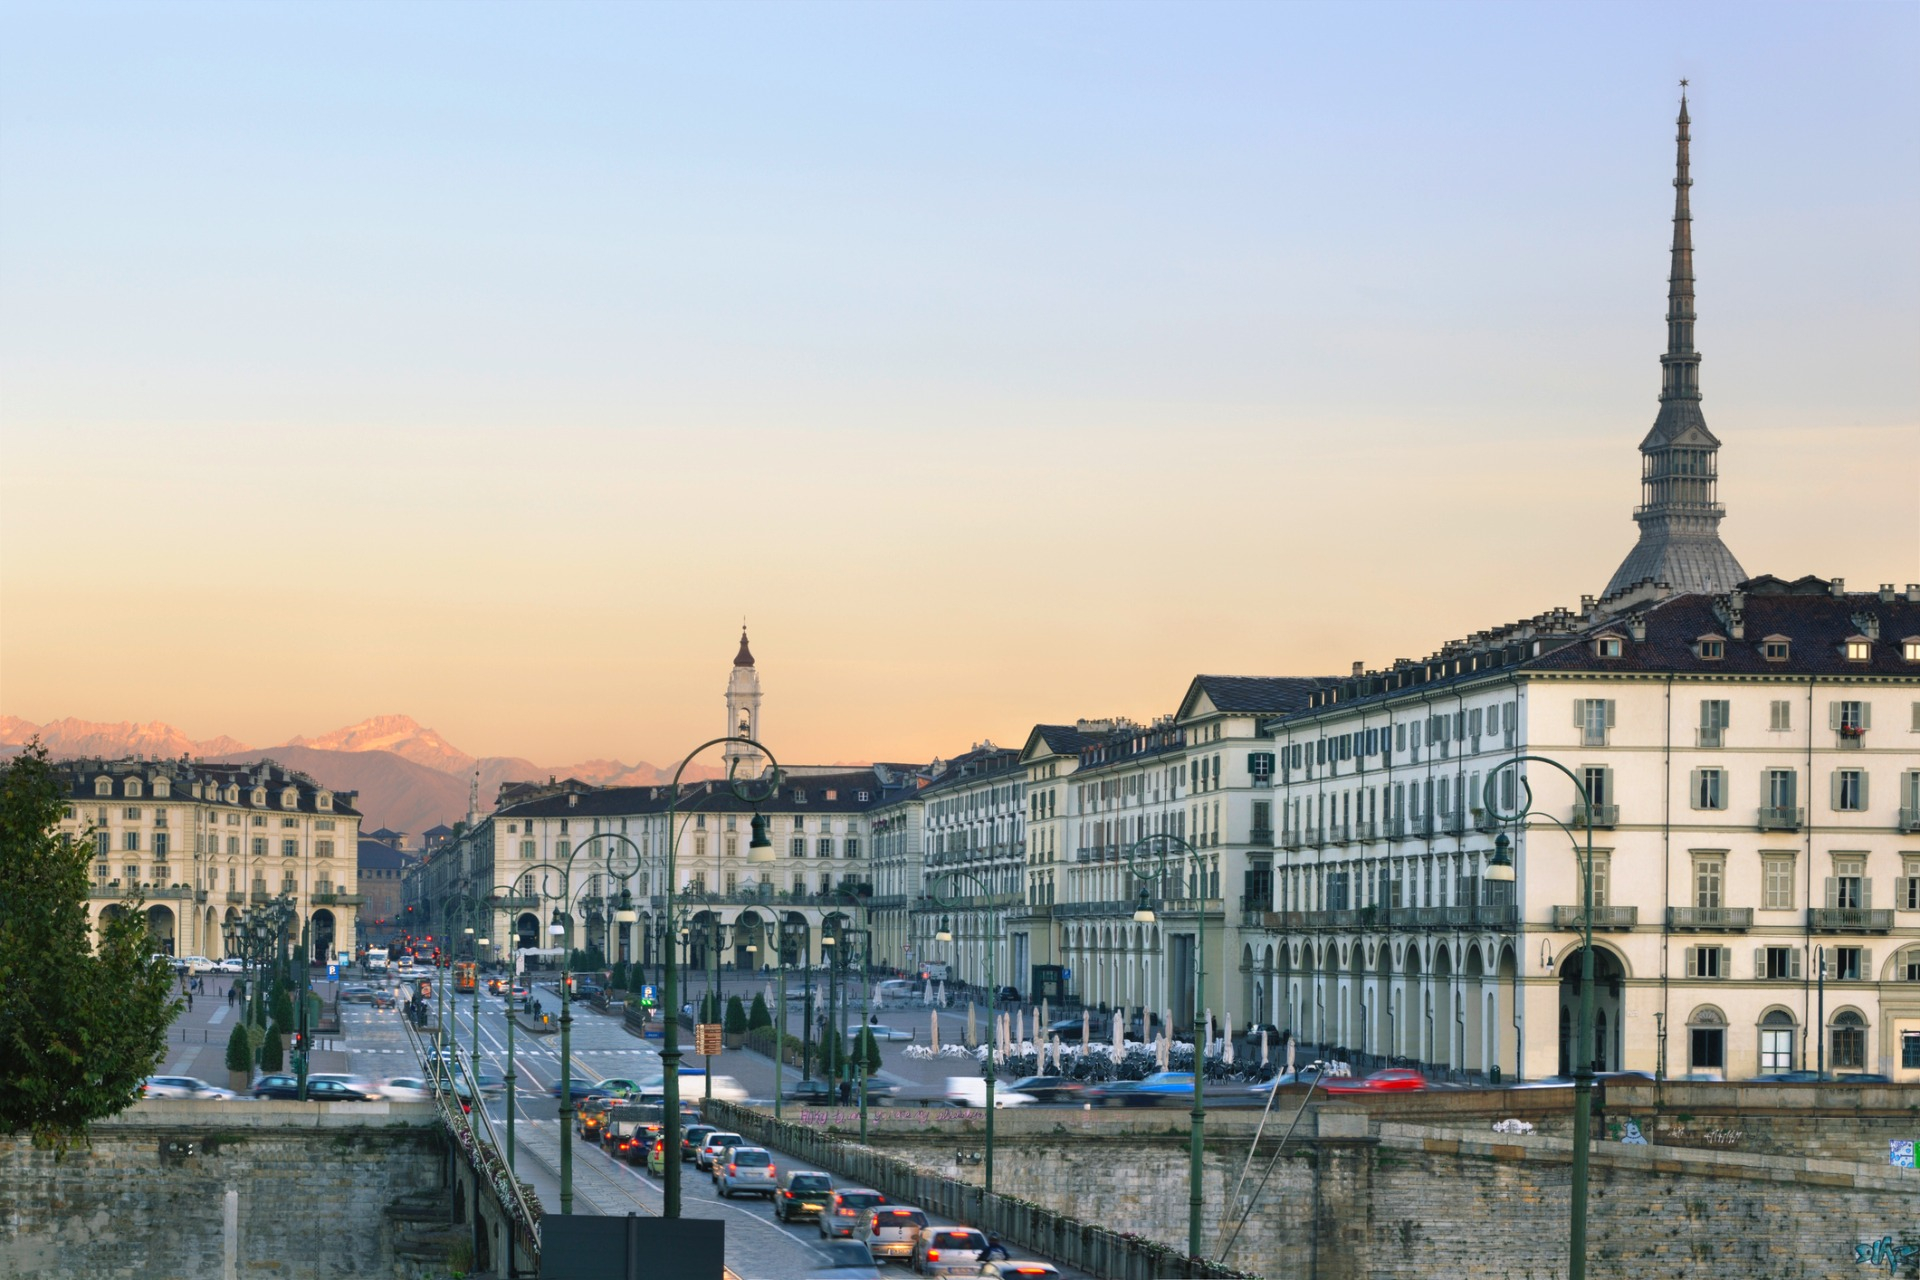 Parcheggi: economia circolare, verde urbano, strade e trasporti efficienti: ecco come Torino si sta muovendo per diventare più green